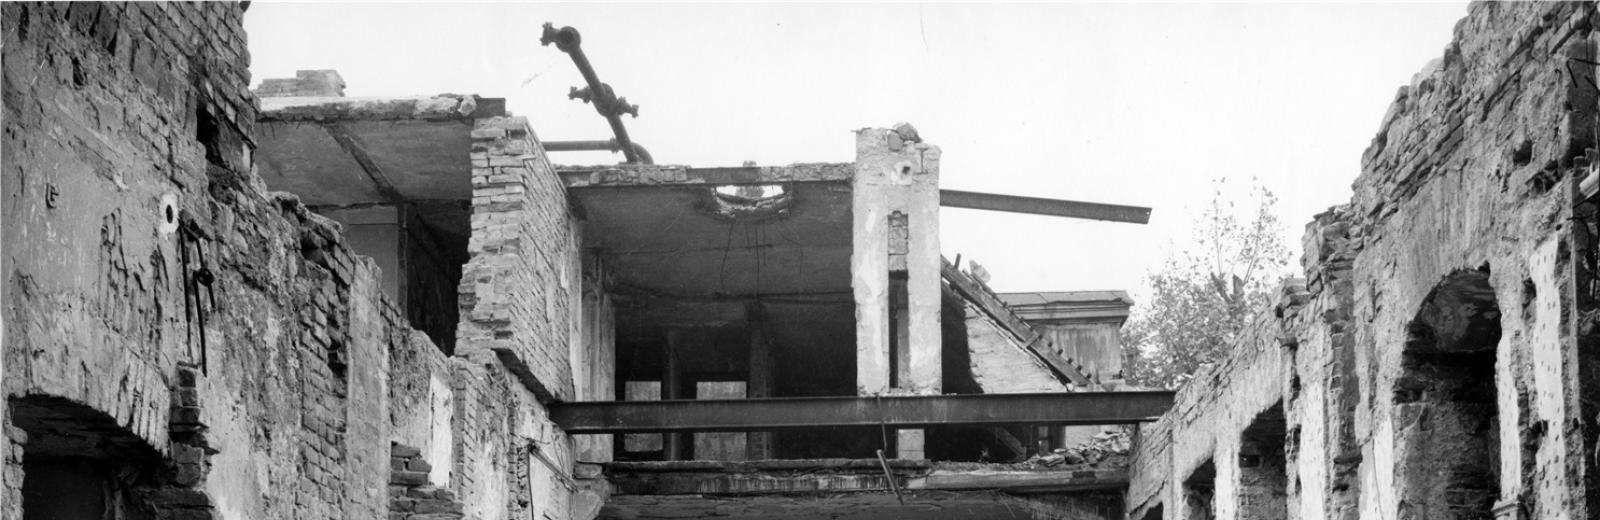 Carl Lutz dans la cour intérieure de la légation britannique détruite © Archives d’histoire contemporaine, ETH Zürich / Agnes Hirschi